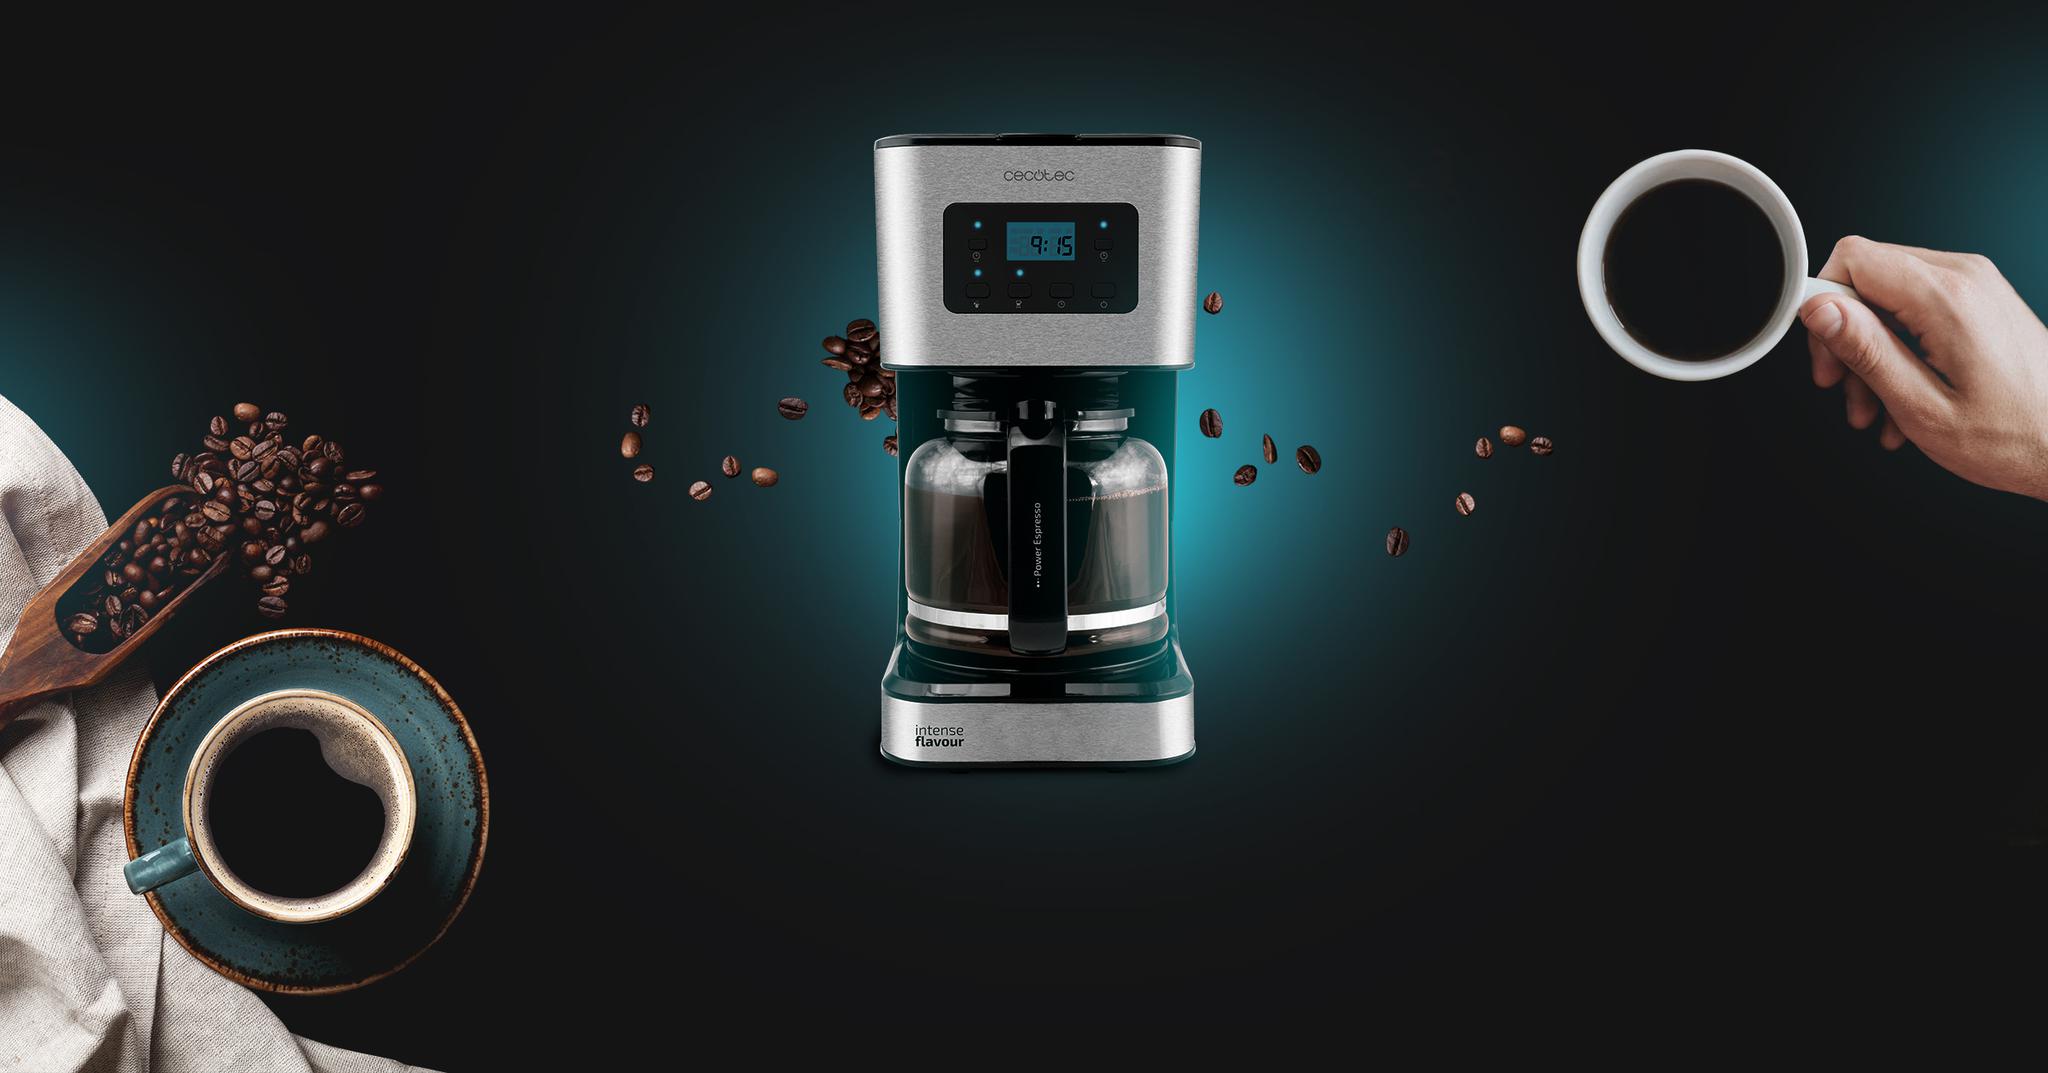 Immagine in primo piano del prodotto Coffee 66 Smart